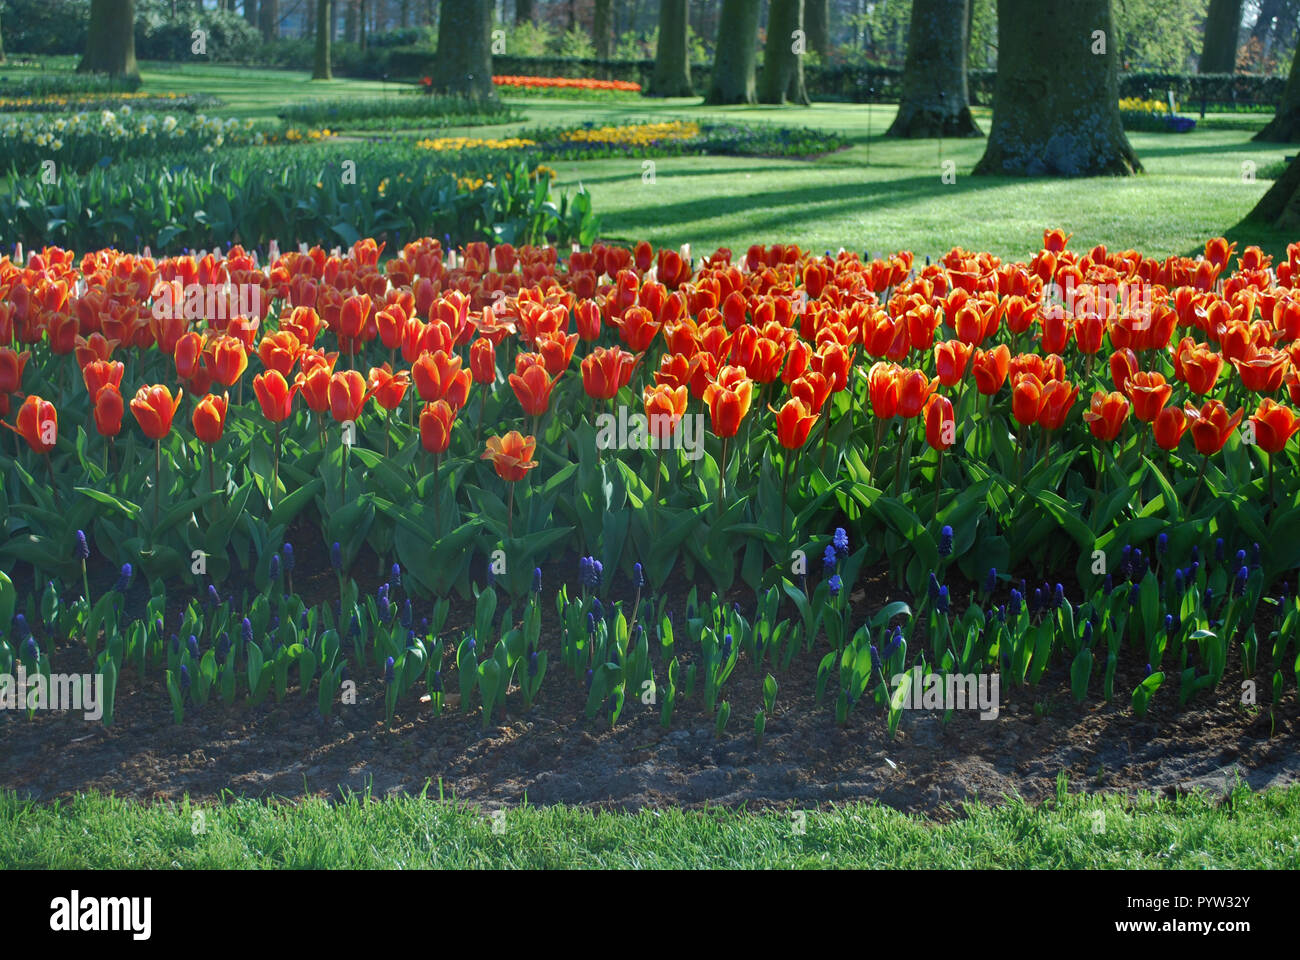 Frühe Ernte Kaufmanniana Tulpen im Park gewachsen. Frühling in den Niederlanden. Stockfoto